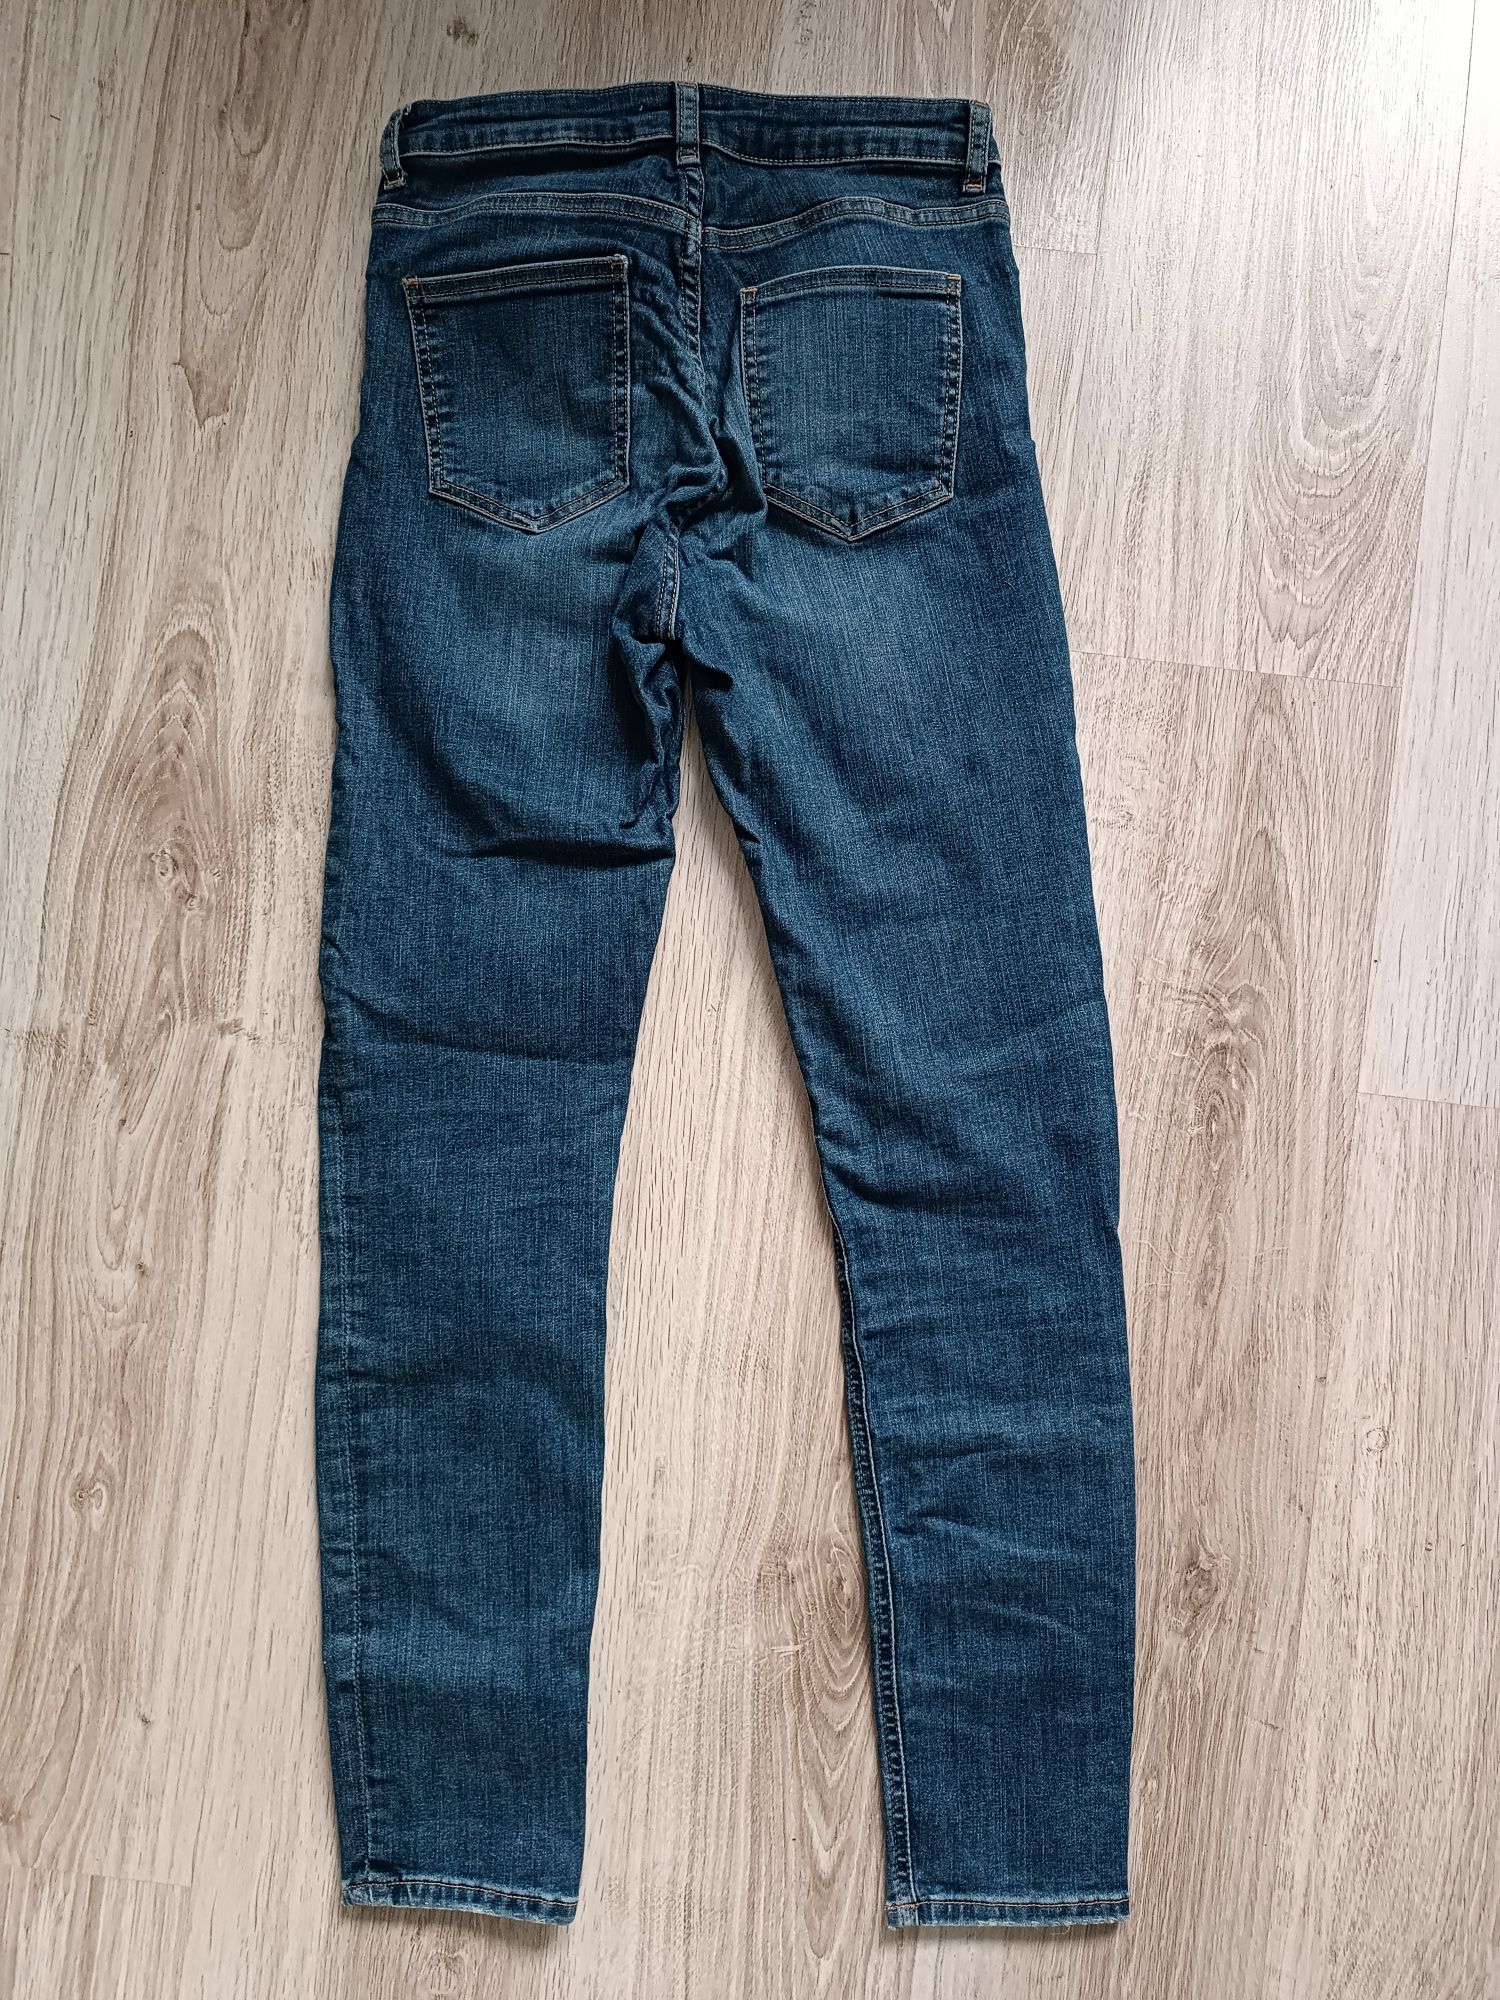 Spodnie jeansy damskie rurki niebieskie S